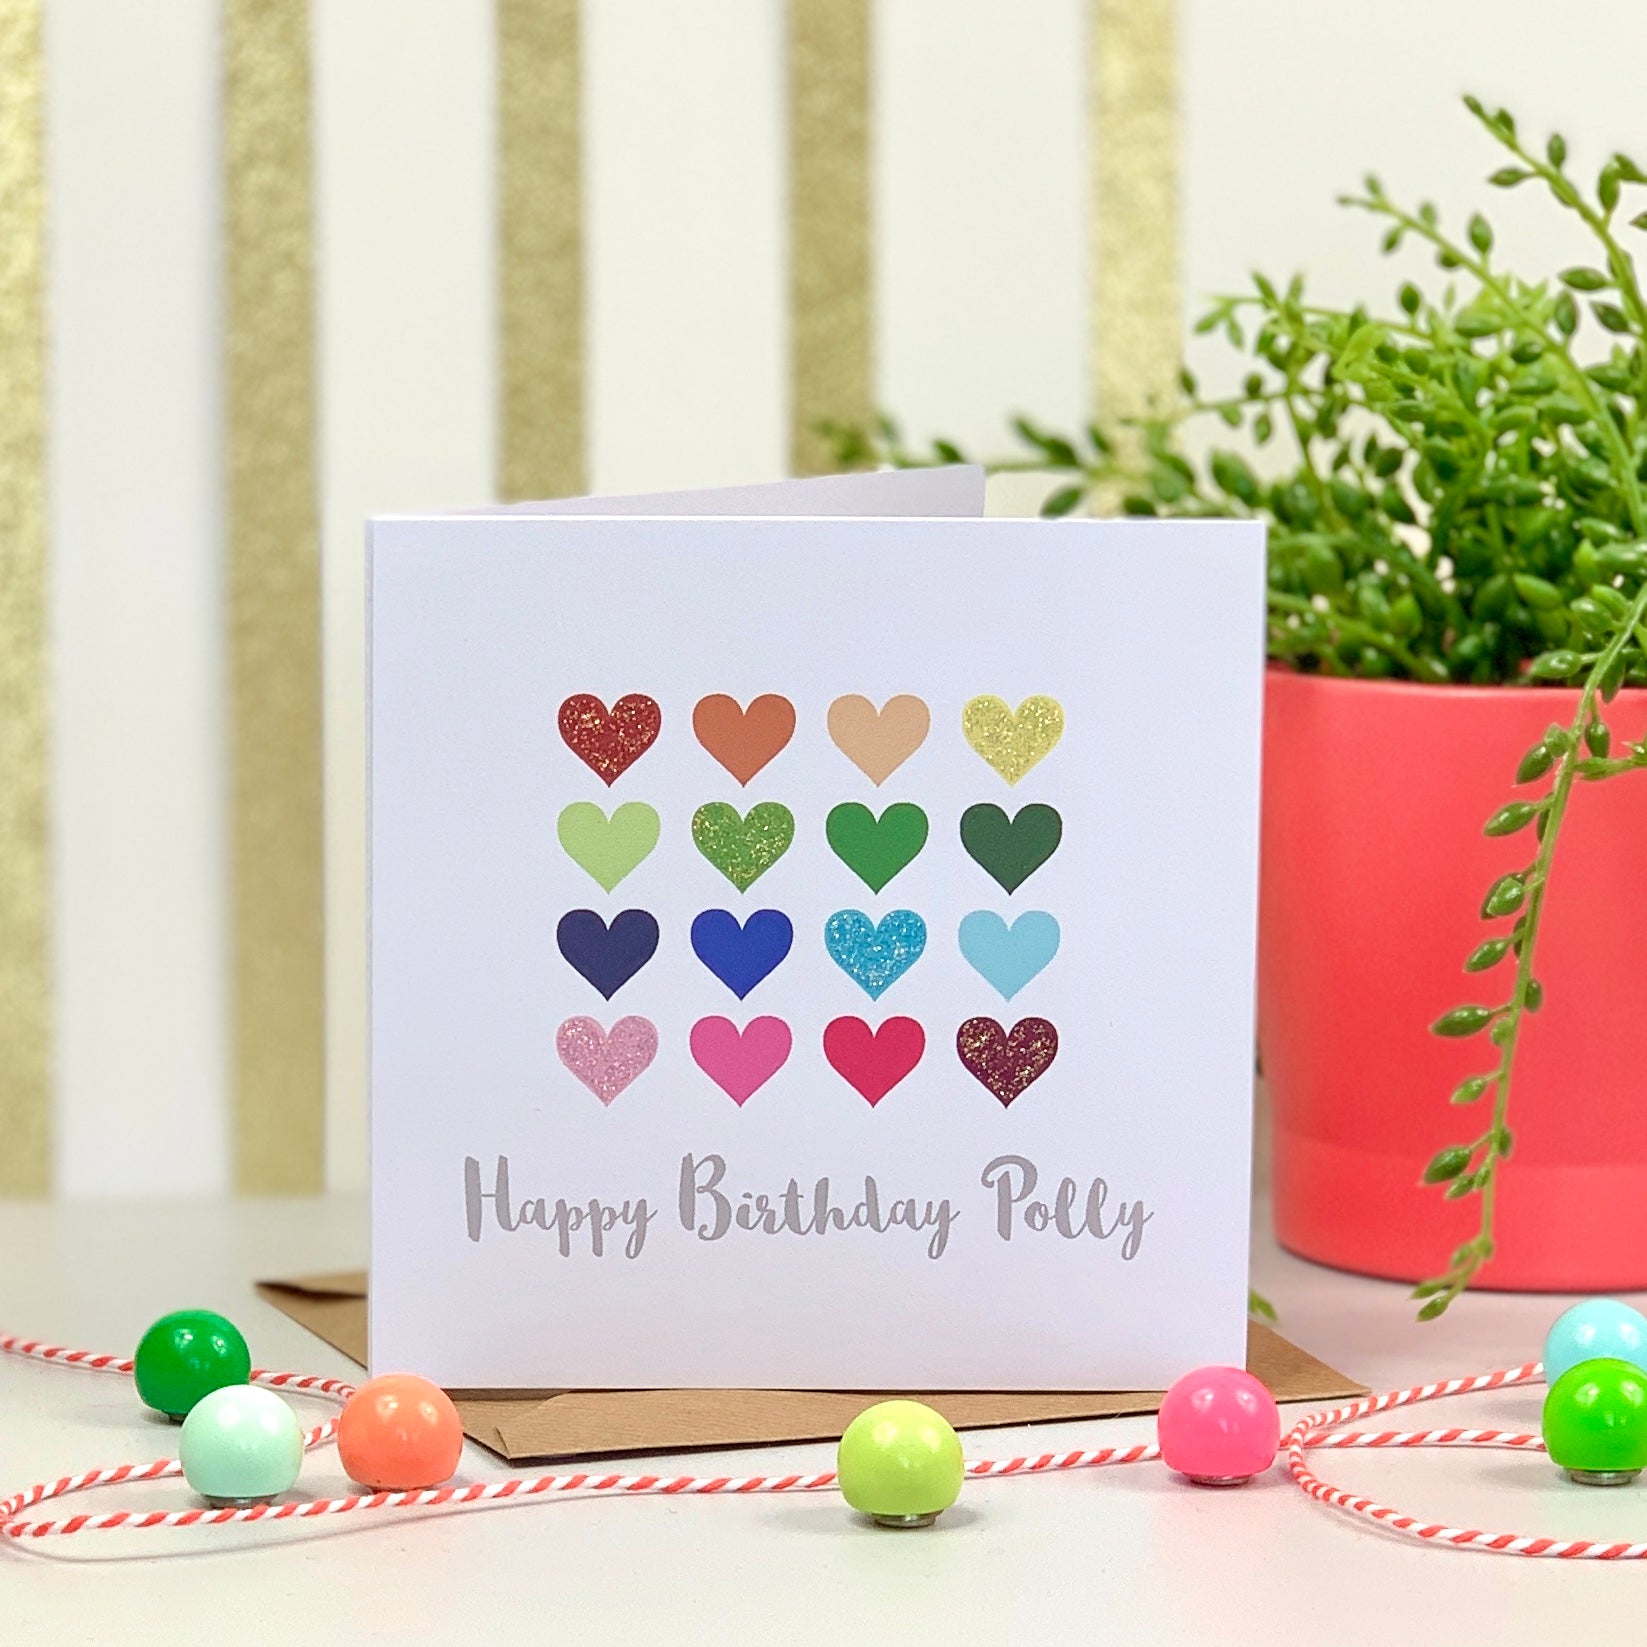 Happy Birthday Glitter Hearts Card